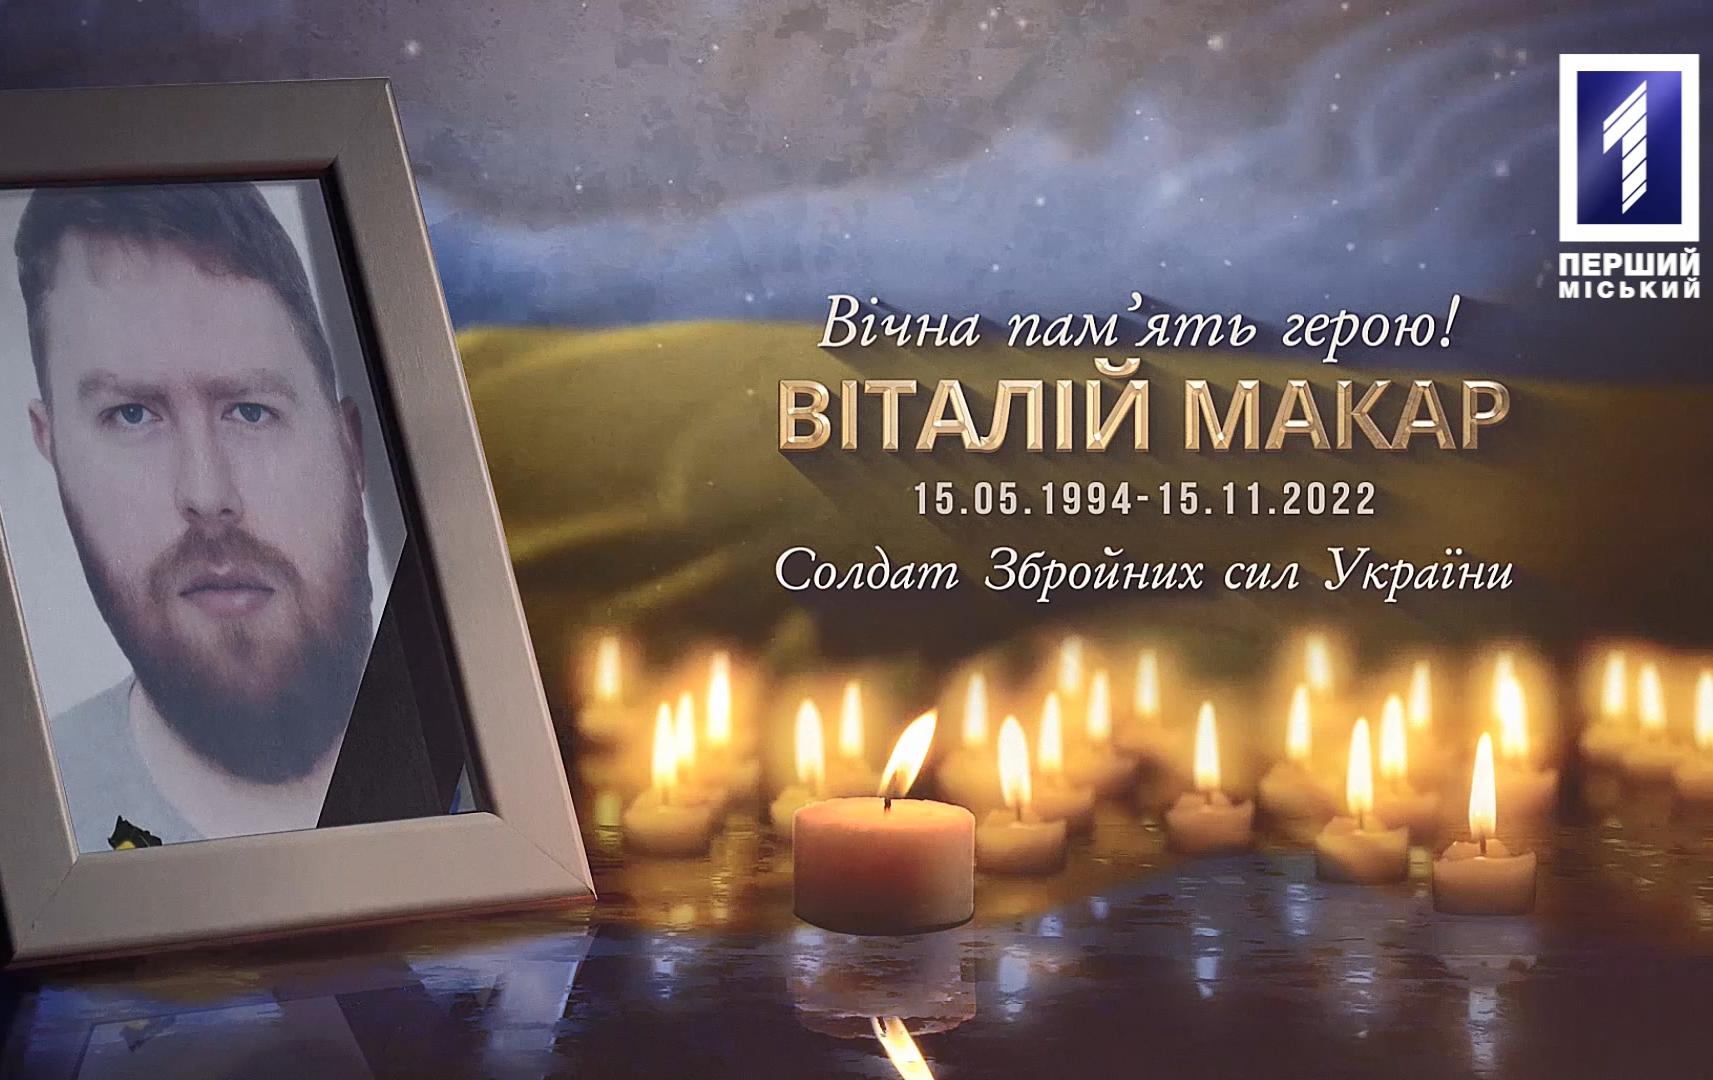 В Кривом Роге похоронили бойца Виталия Макара, жизнь которого оборвалась в Донецкой области